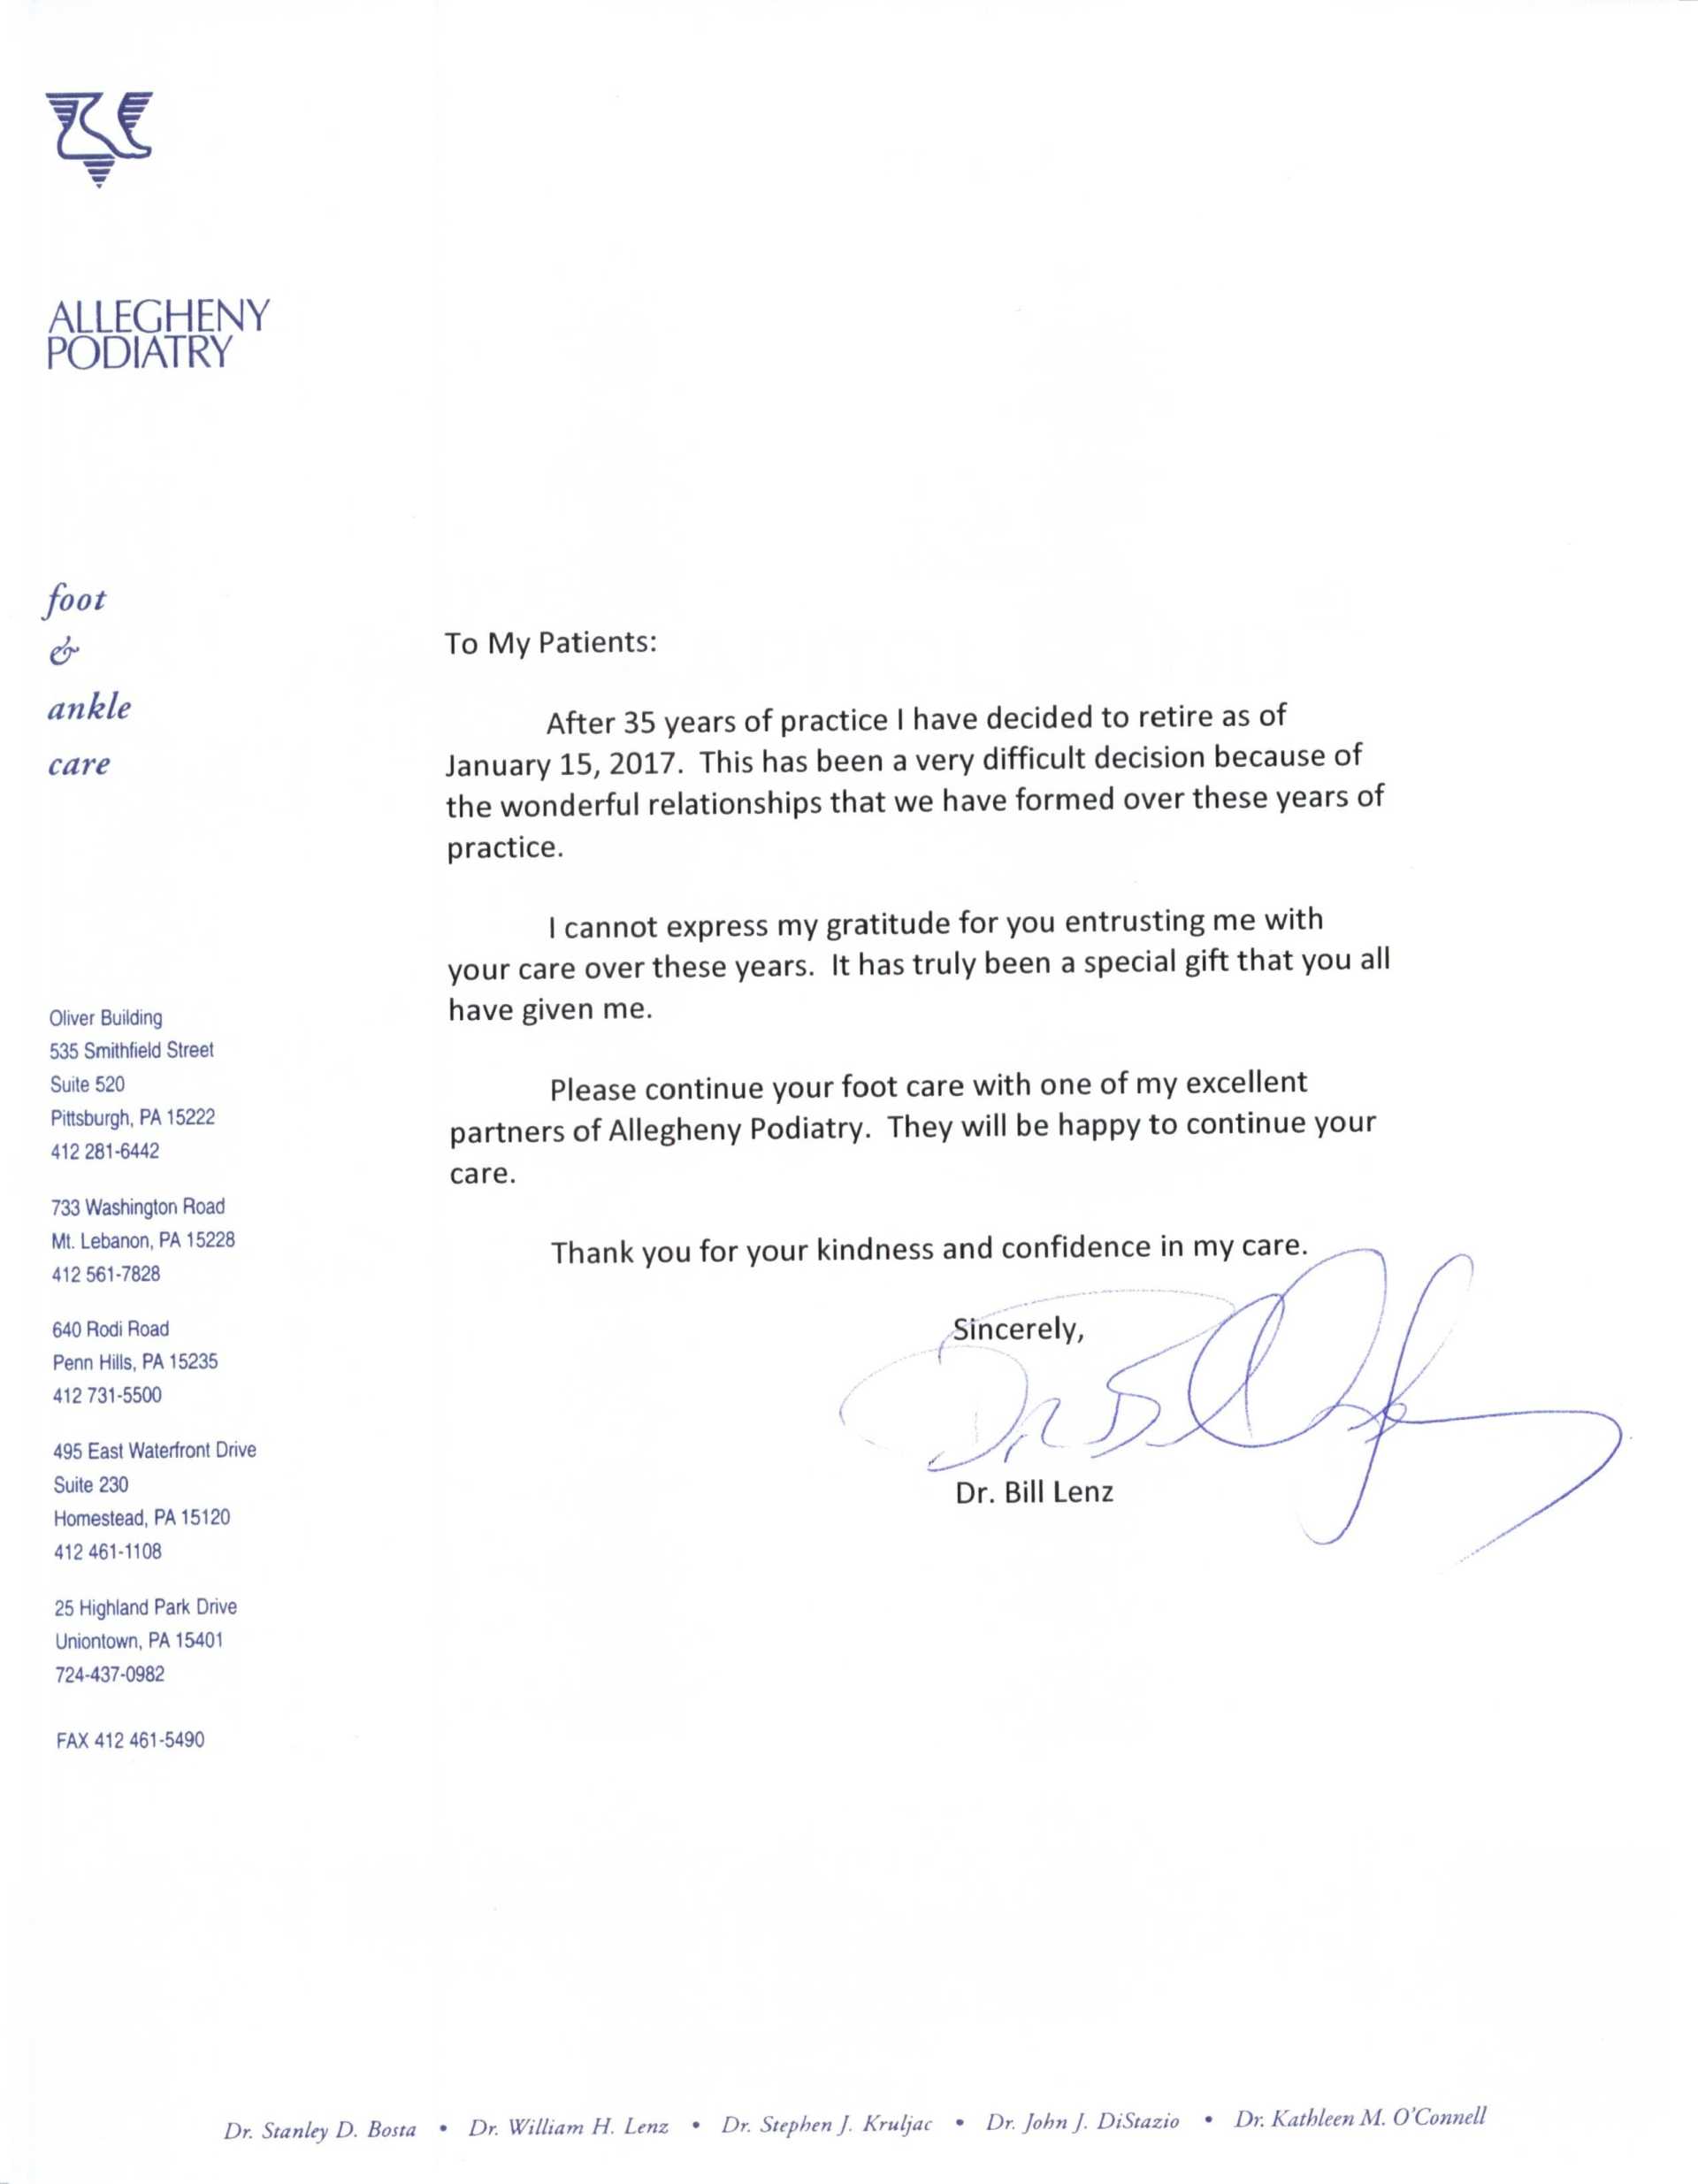 Dr. Lenz retirement letter to his patients.